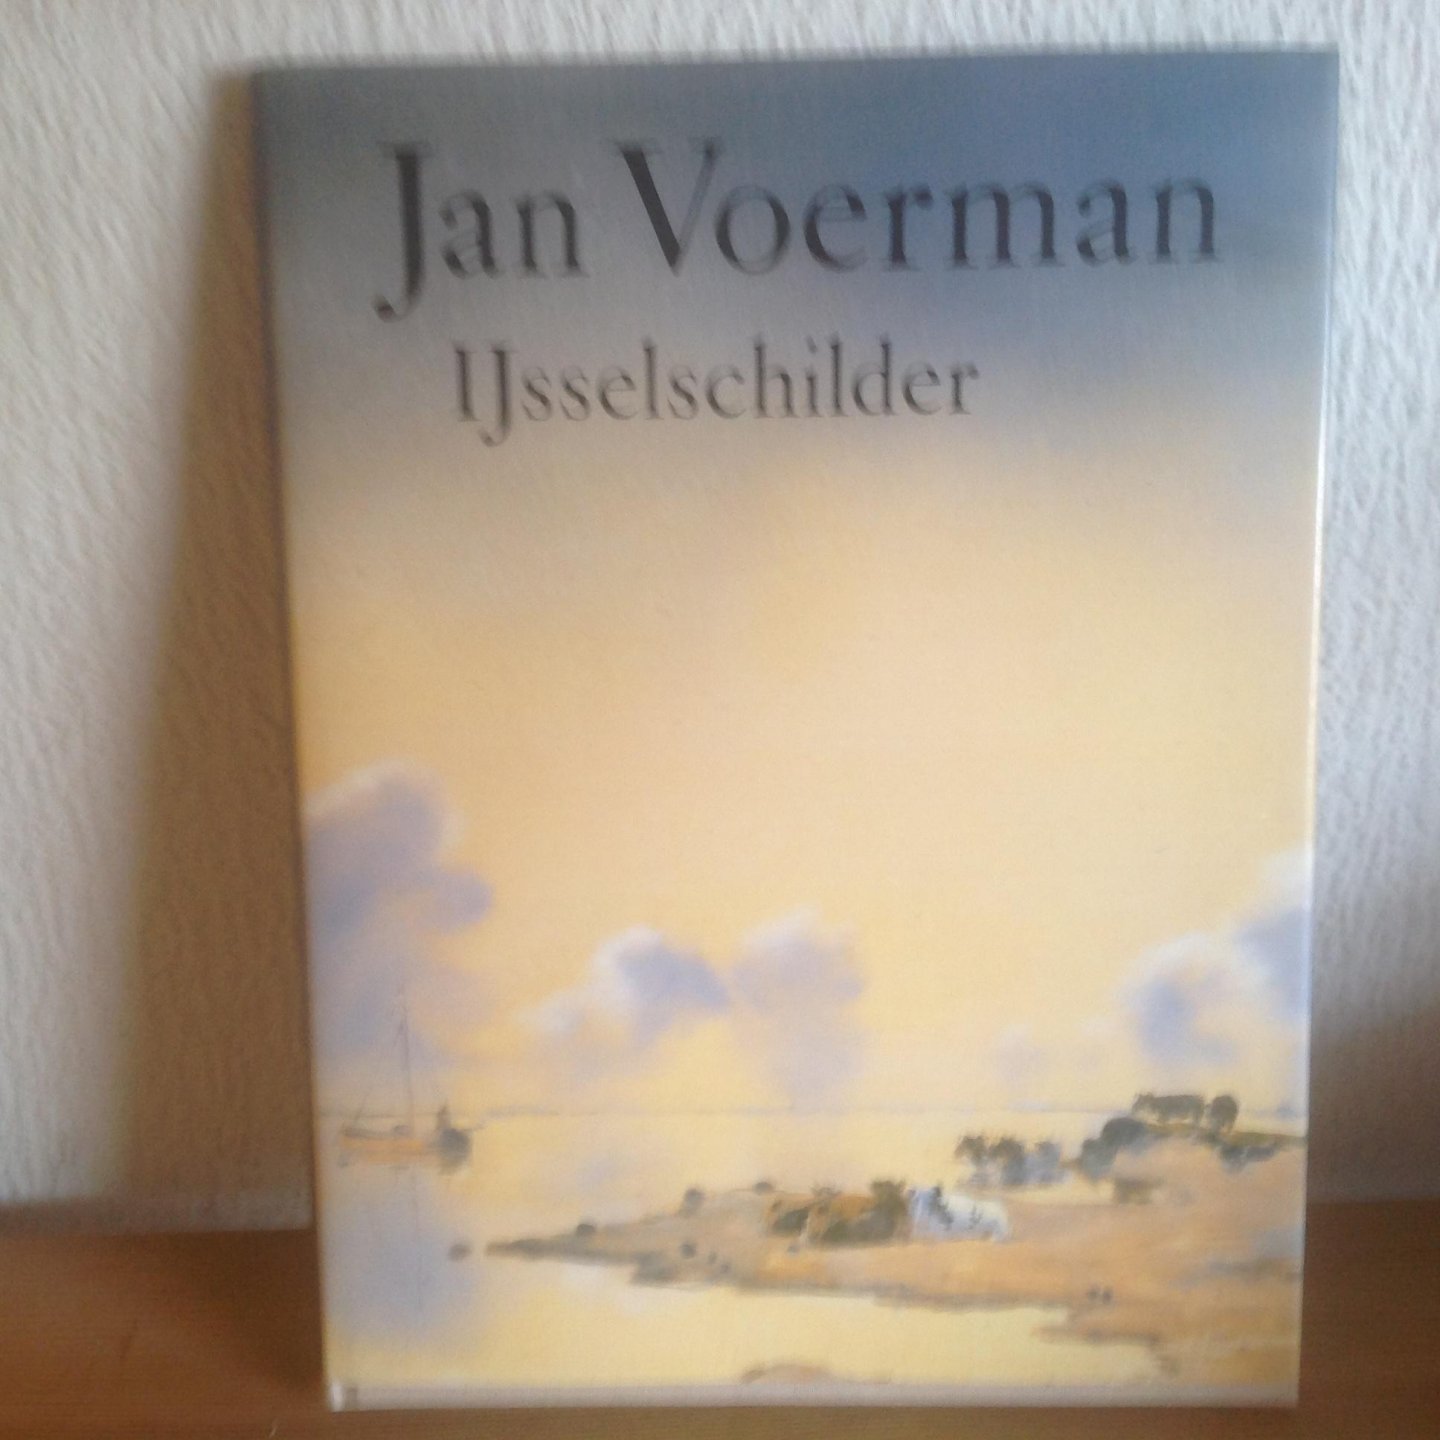 Wagner, A. - Jan Voerman, IJsselschilder / druk 1